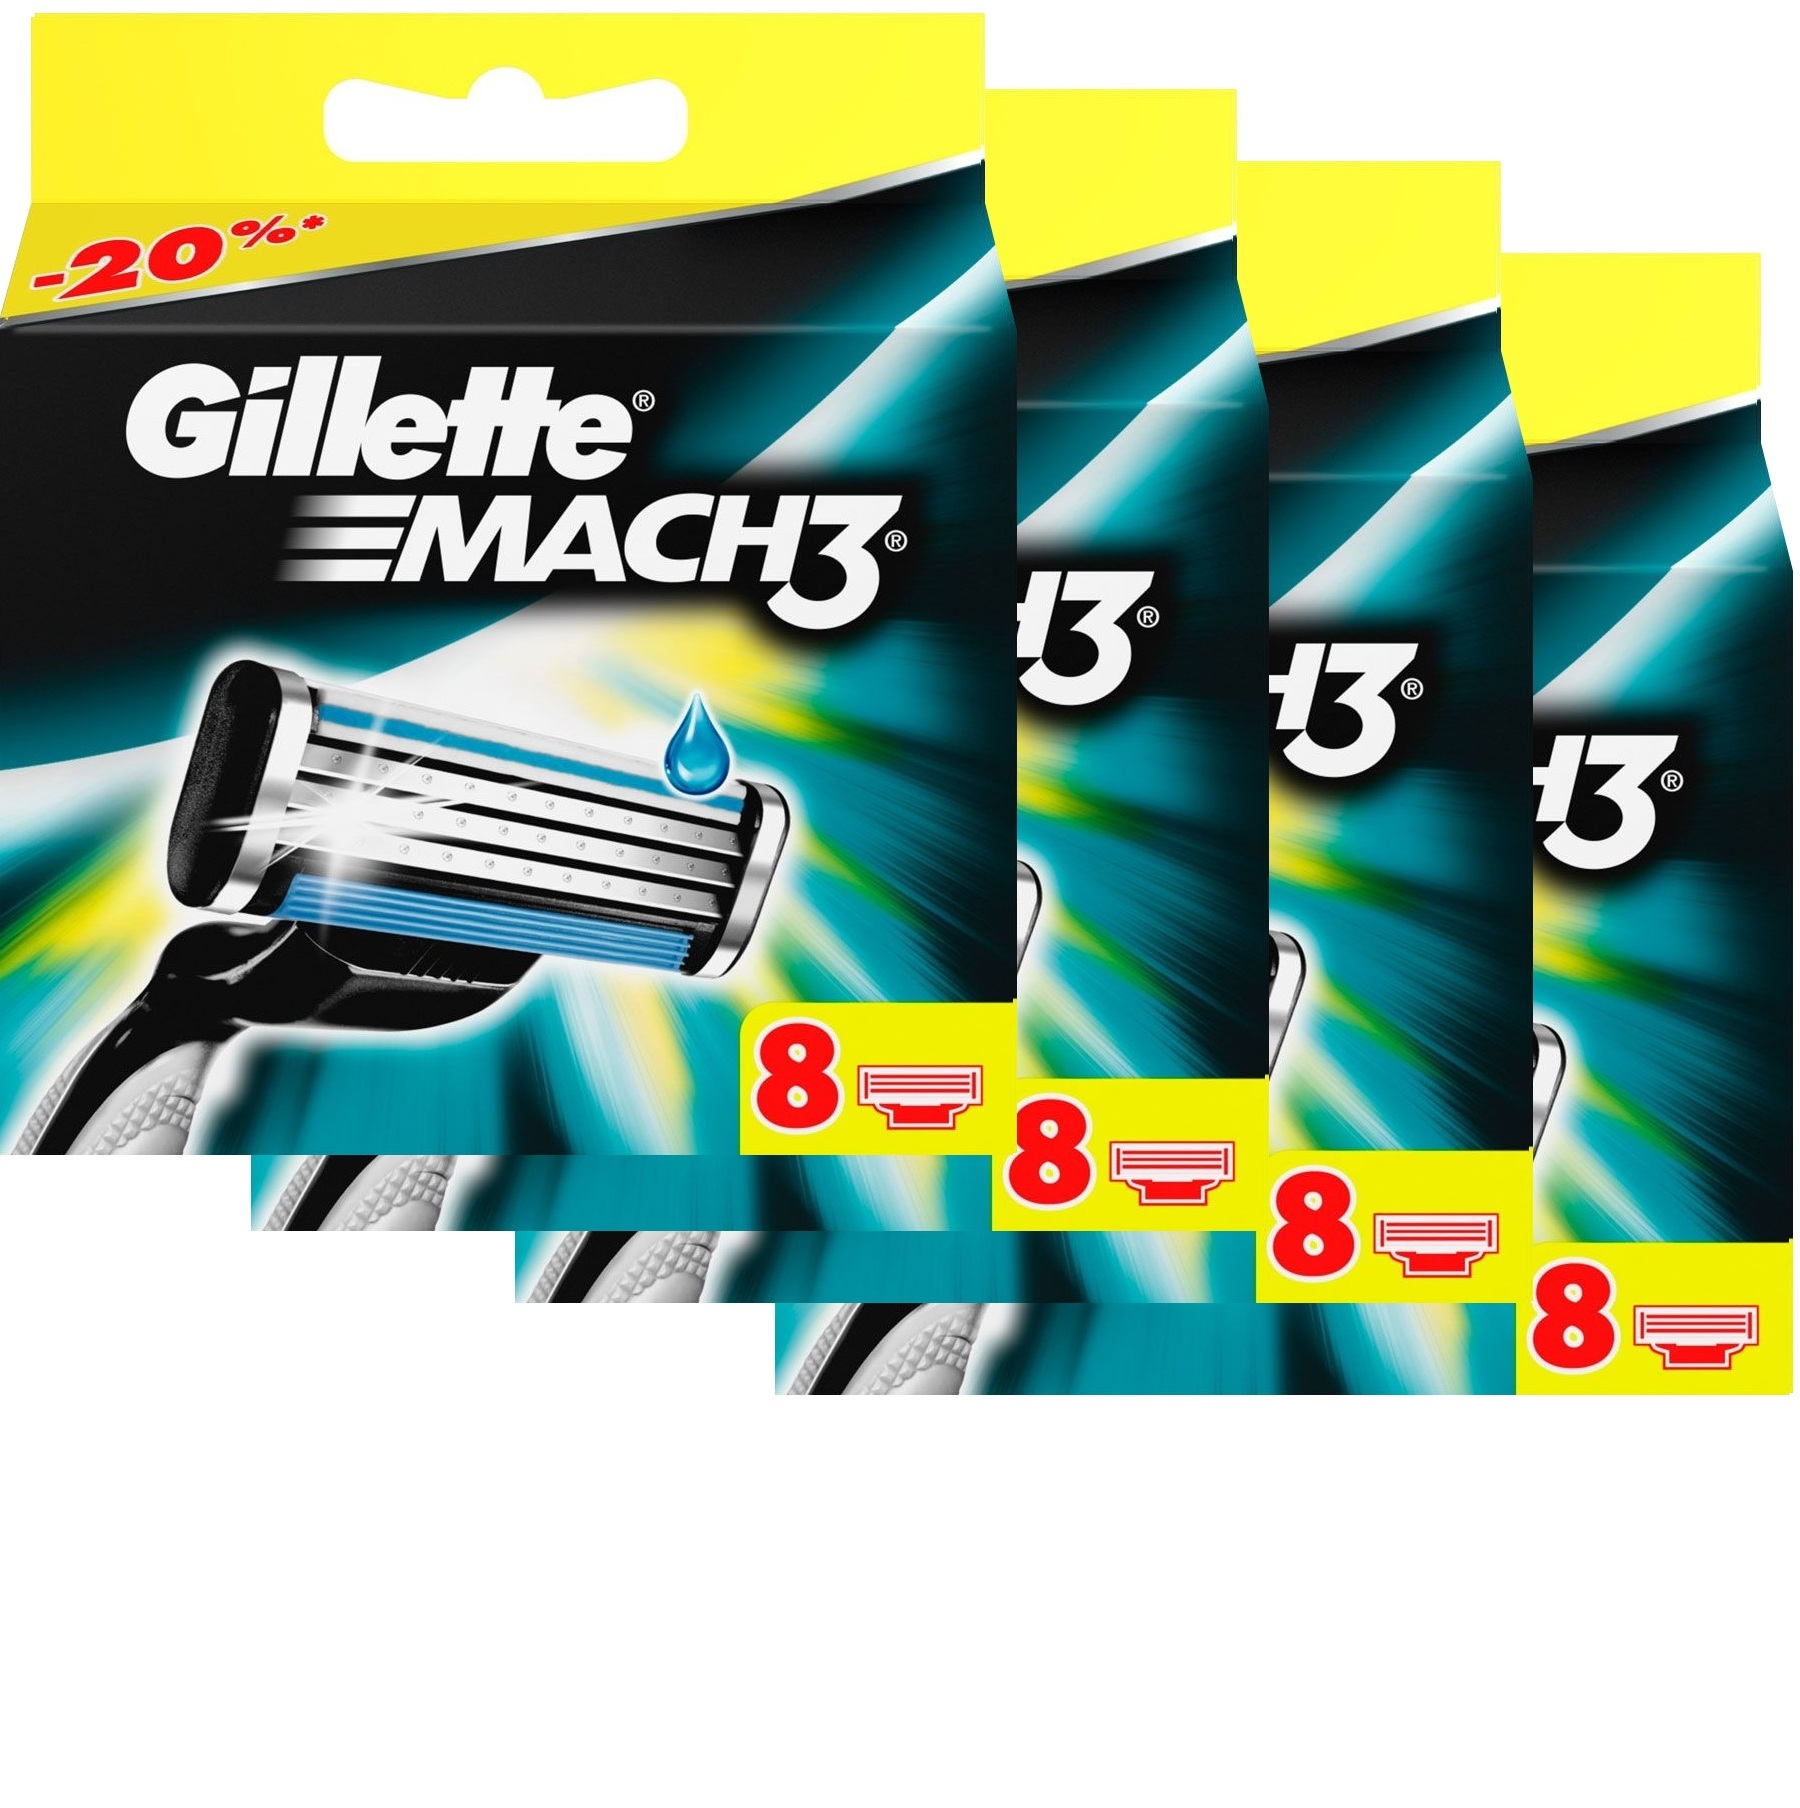 Сменные кассеты для бритья Gillette MACH3 комплект 4 по 8 (32 шт) Цена с учетом скидки 9%.